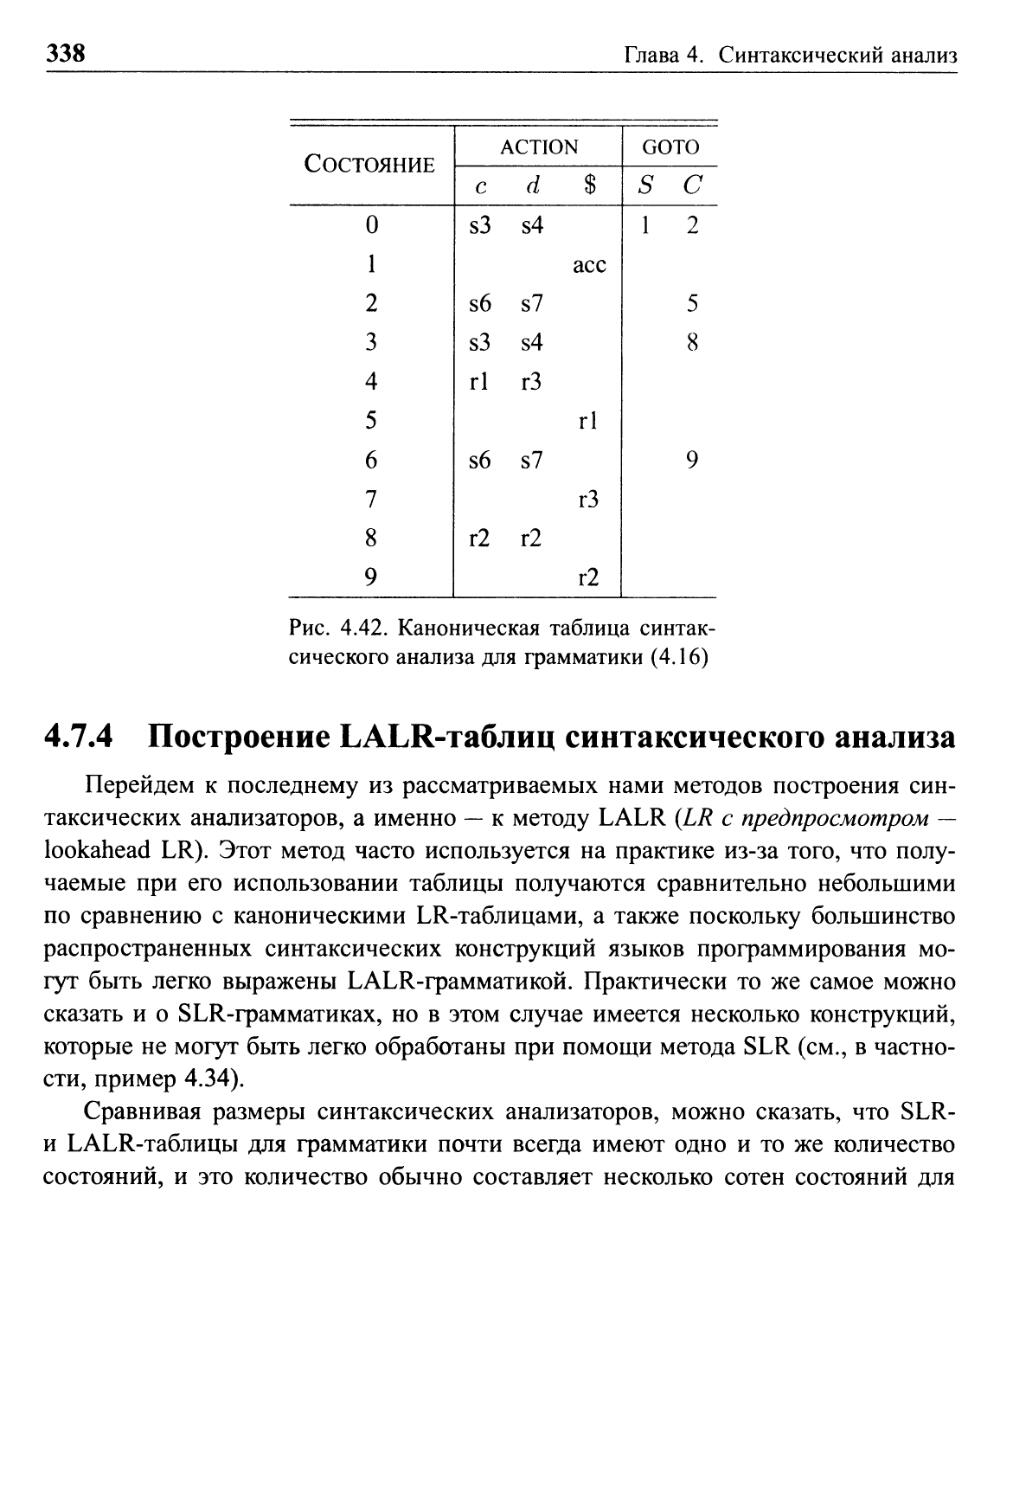 4.7.4 Построение LALR-таблиц синтаксического анализа